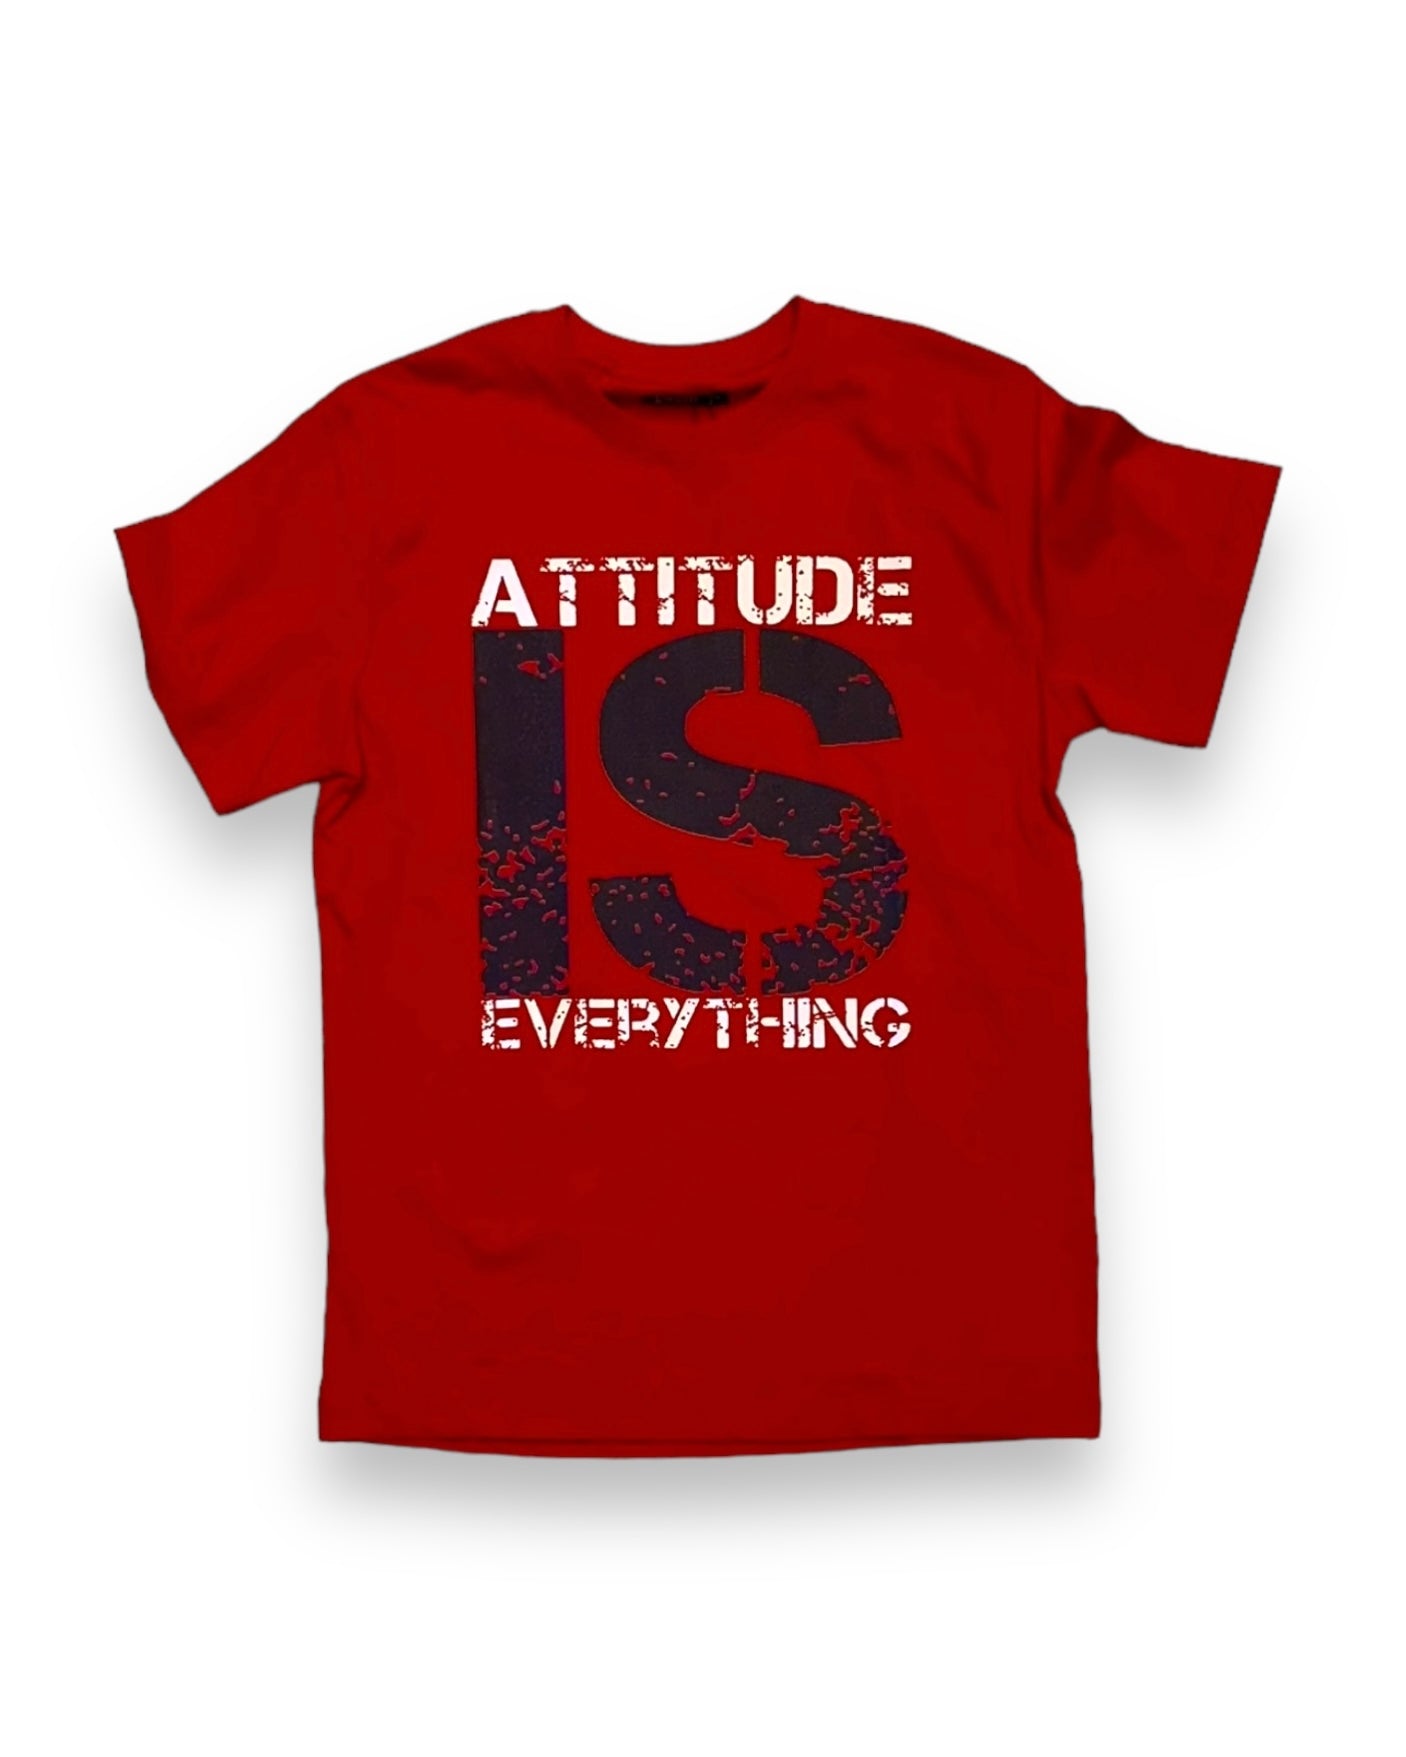 Attitude Tee